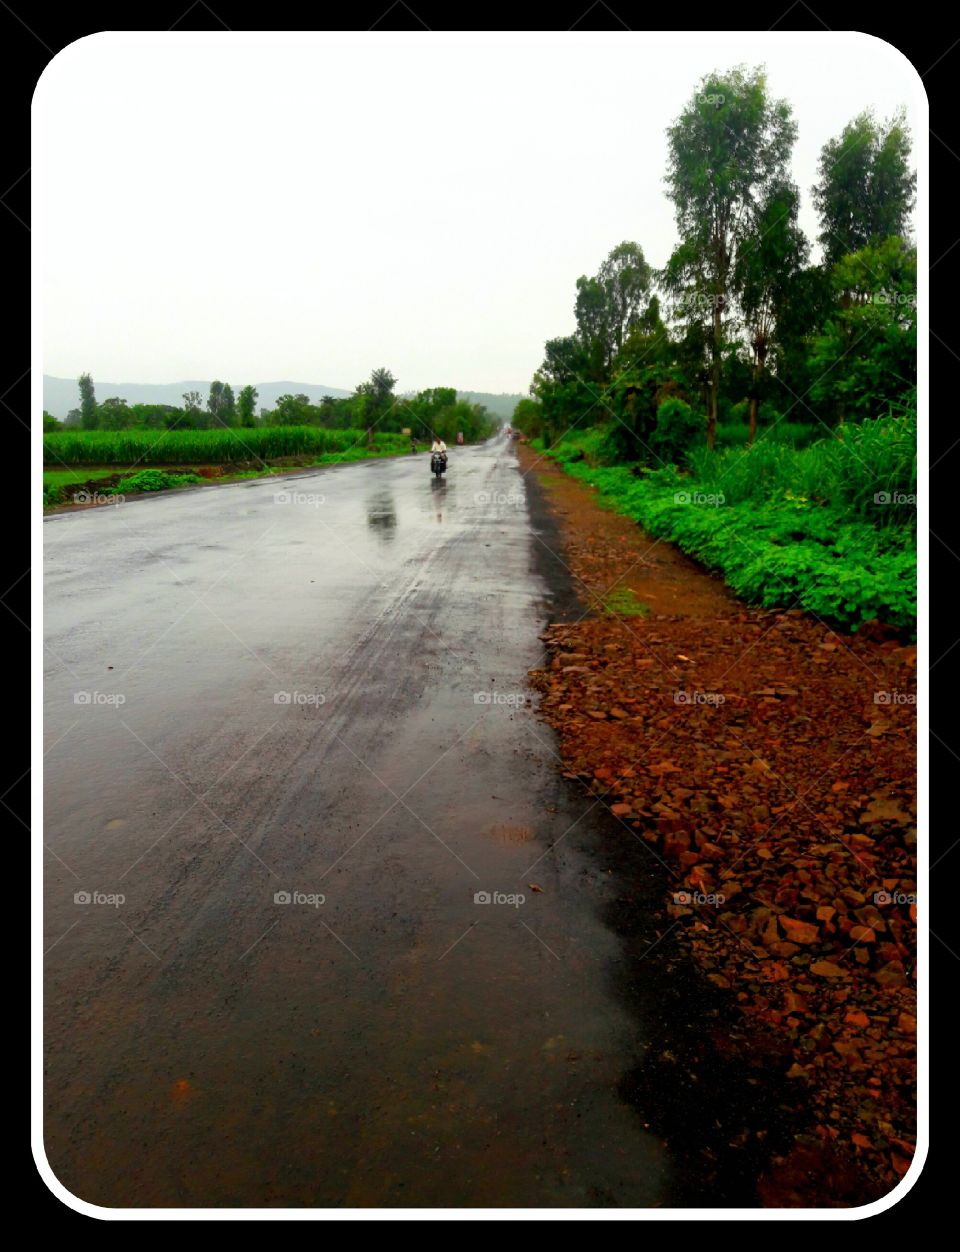 Road in rainy season